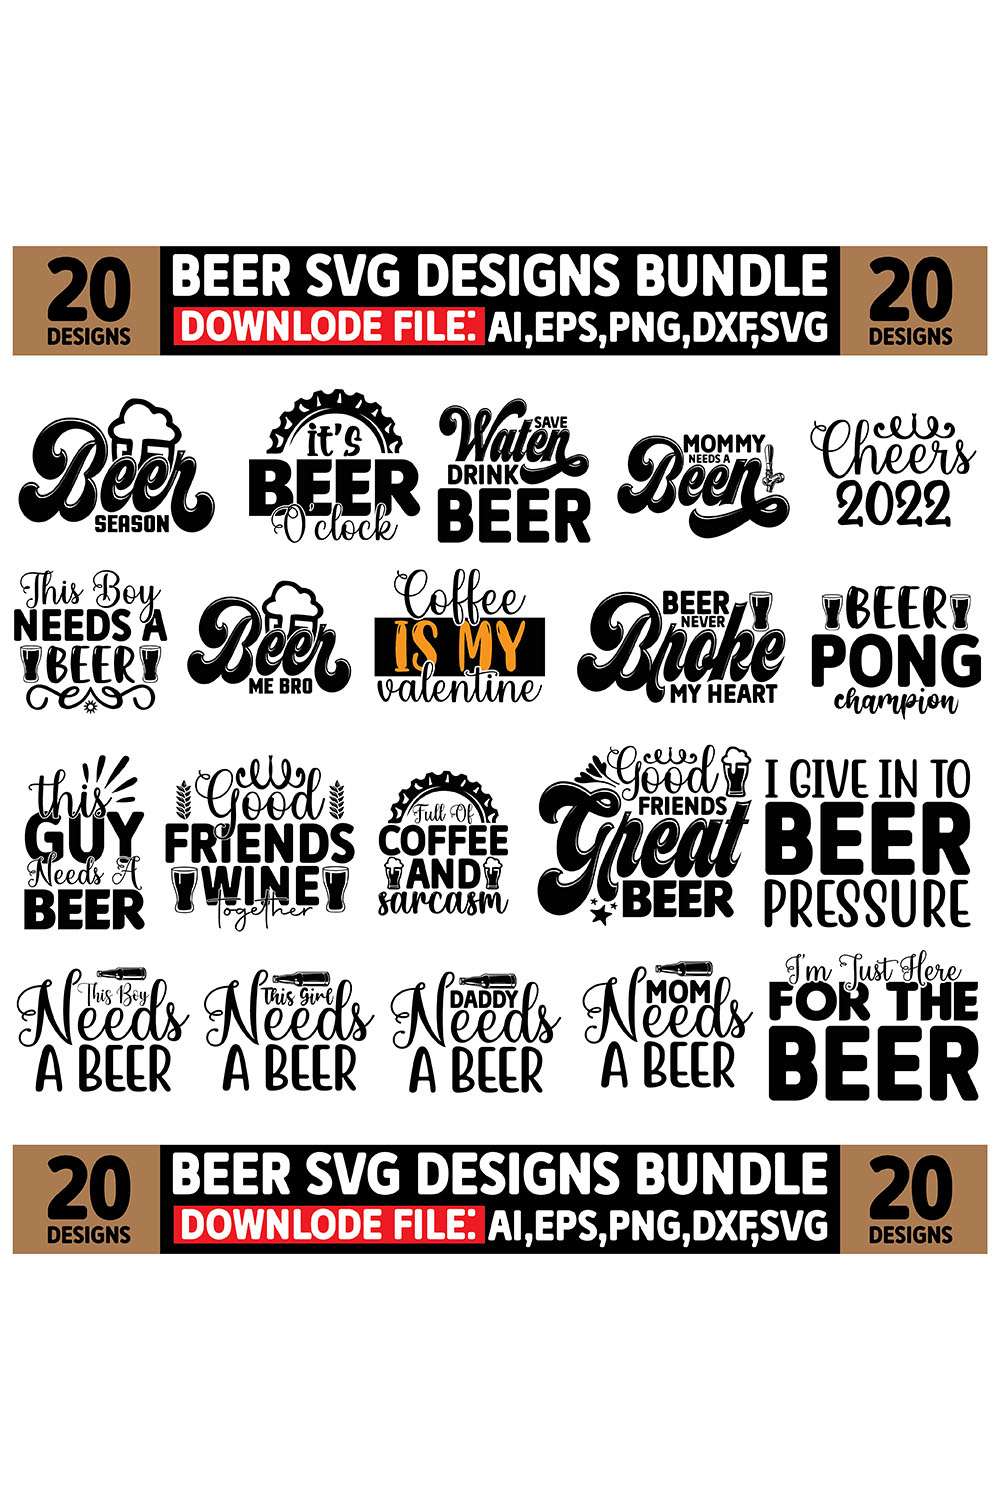 Beer SVG Designs Bundle pinterest image.